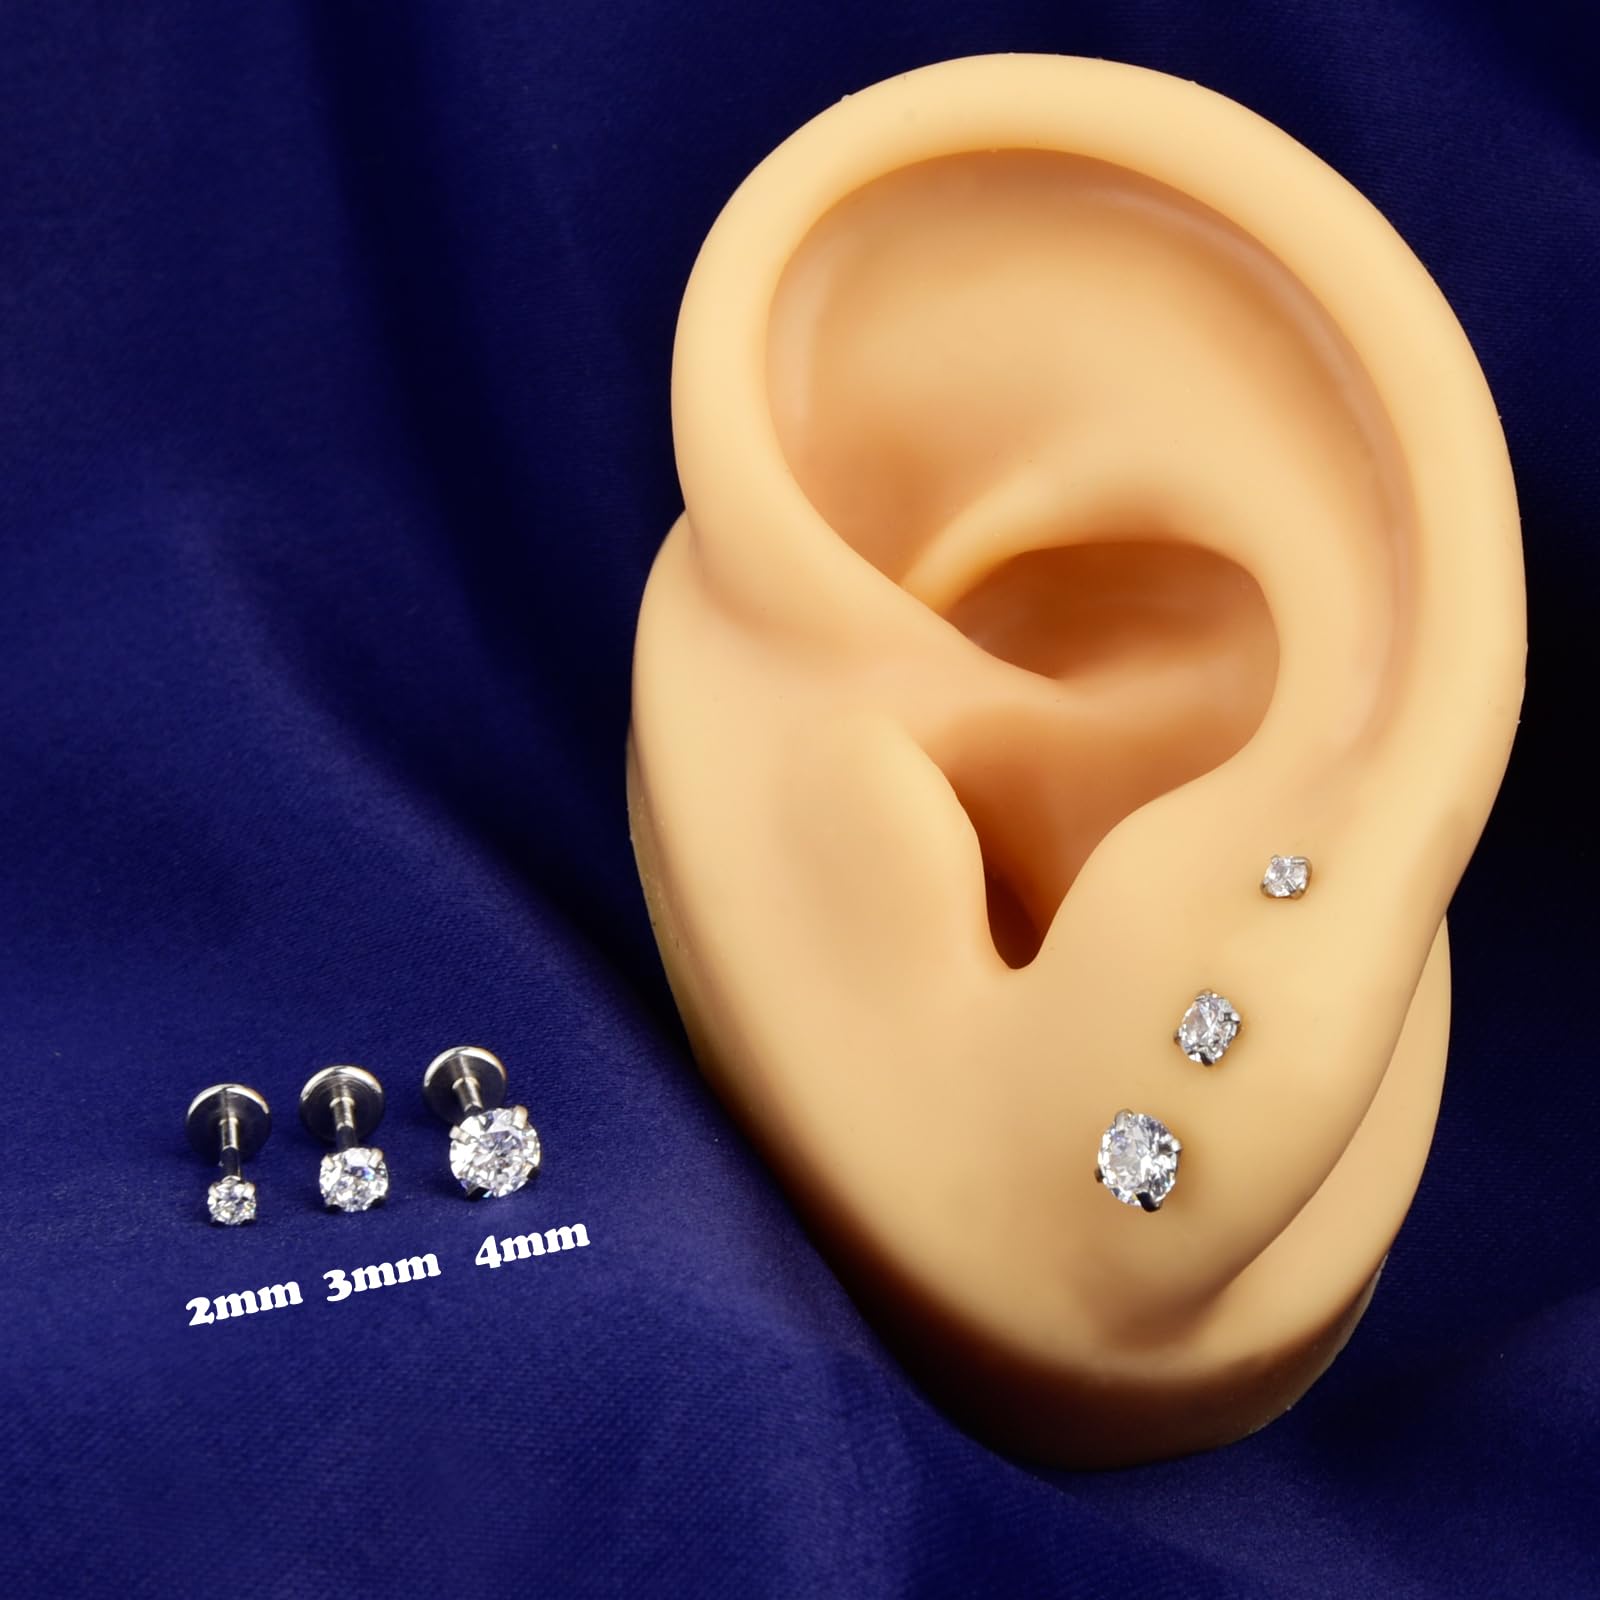 CANDYFANCY 16g 2/3/4mm Cubic Zirconia Triple Forward Helix Ear Cartilage Tragus Studs Earrings Lip Piercing 16 gauge